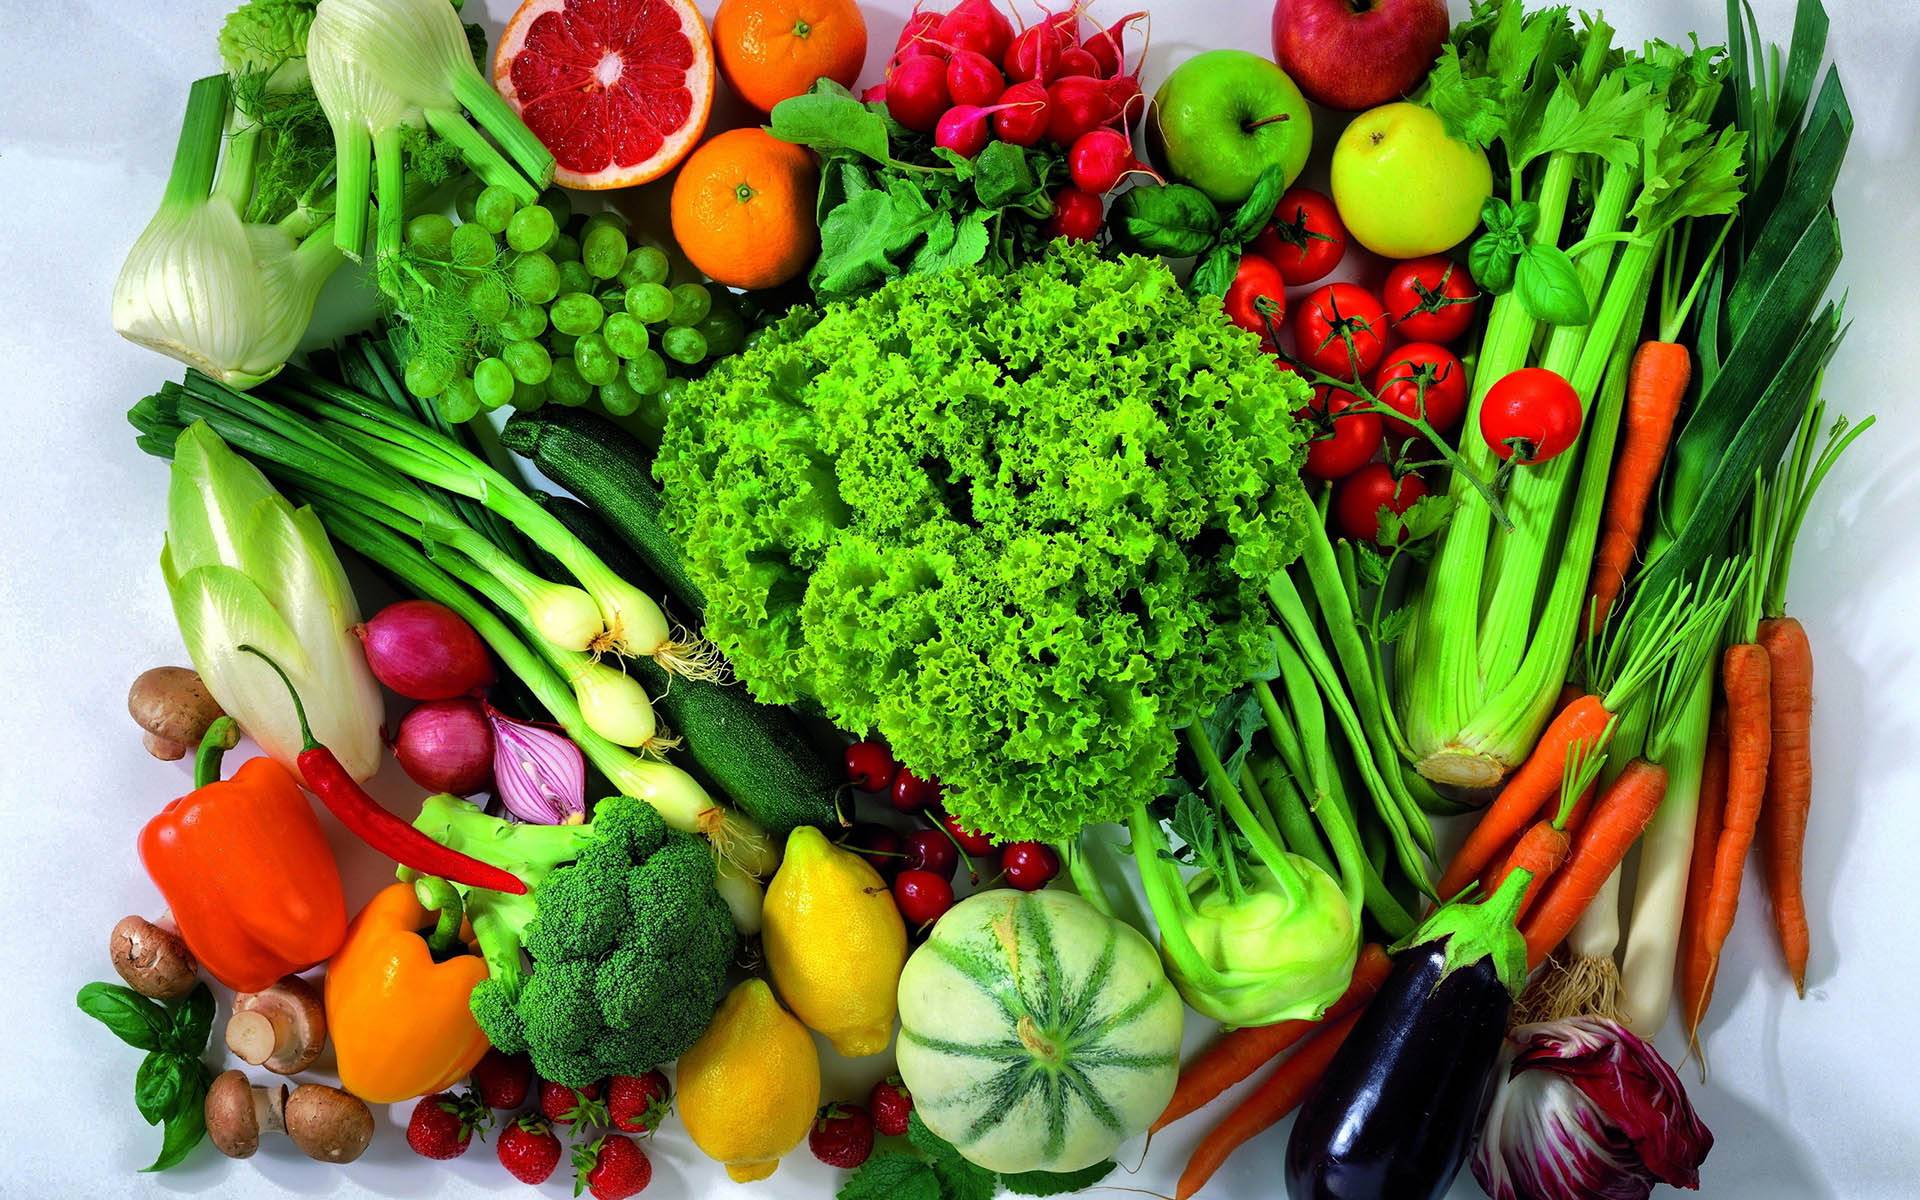 با سبزیجات و نکاتی برای درست مصرف کردن آن ها آشنا شوید